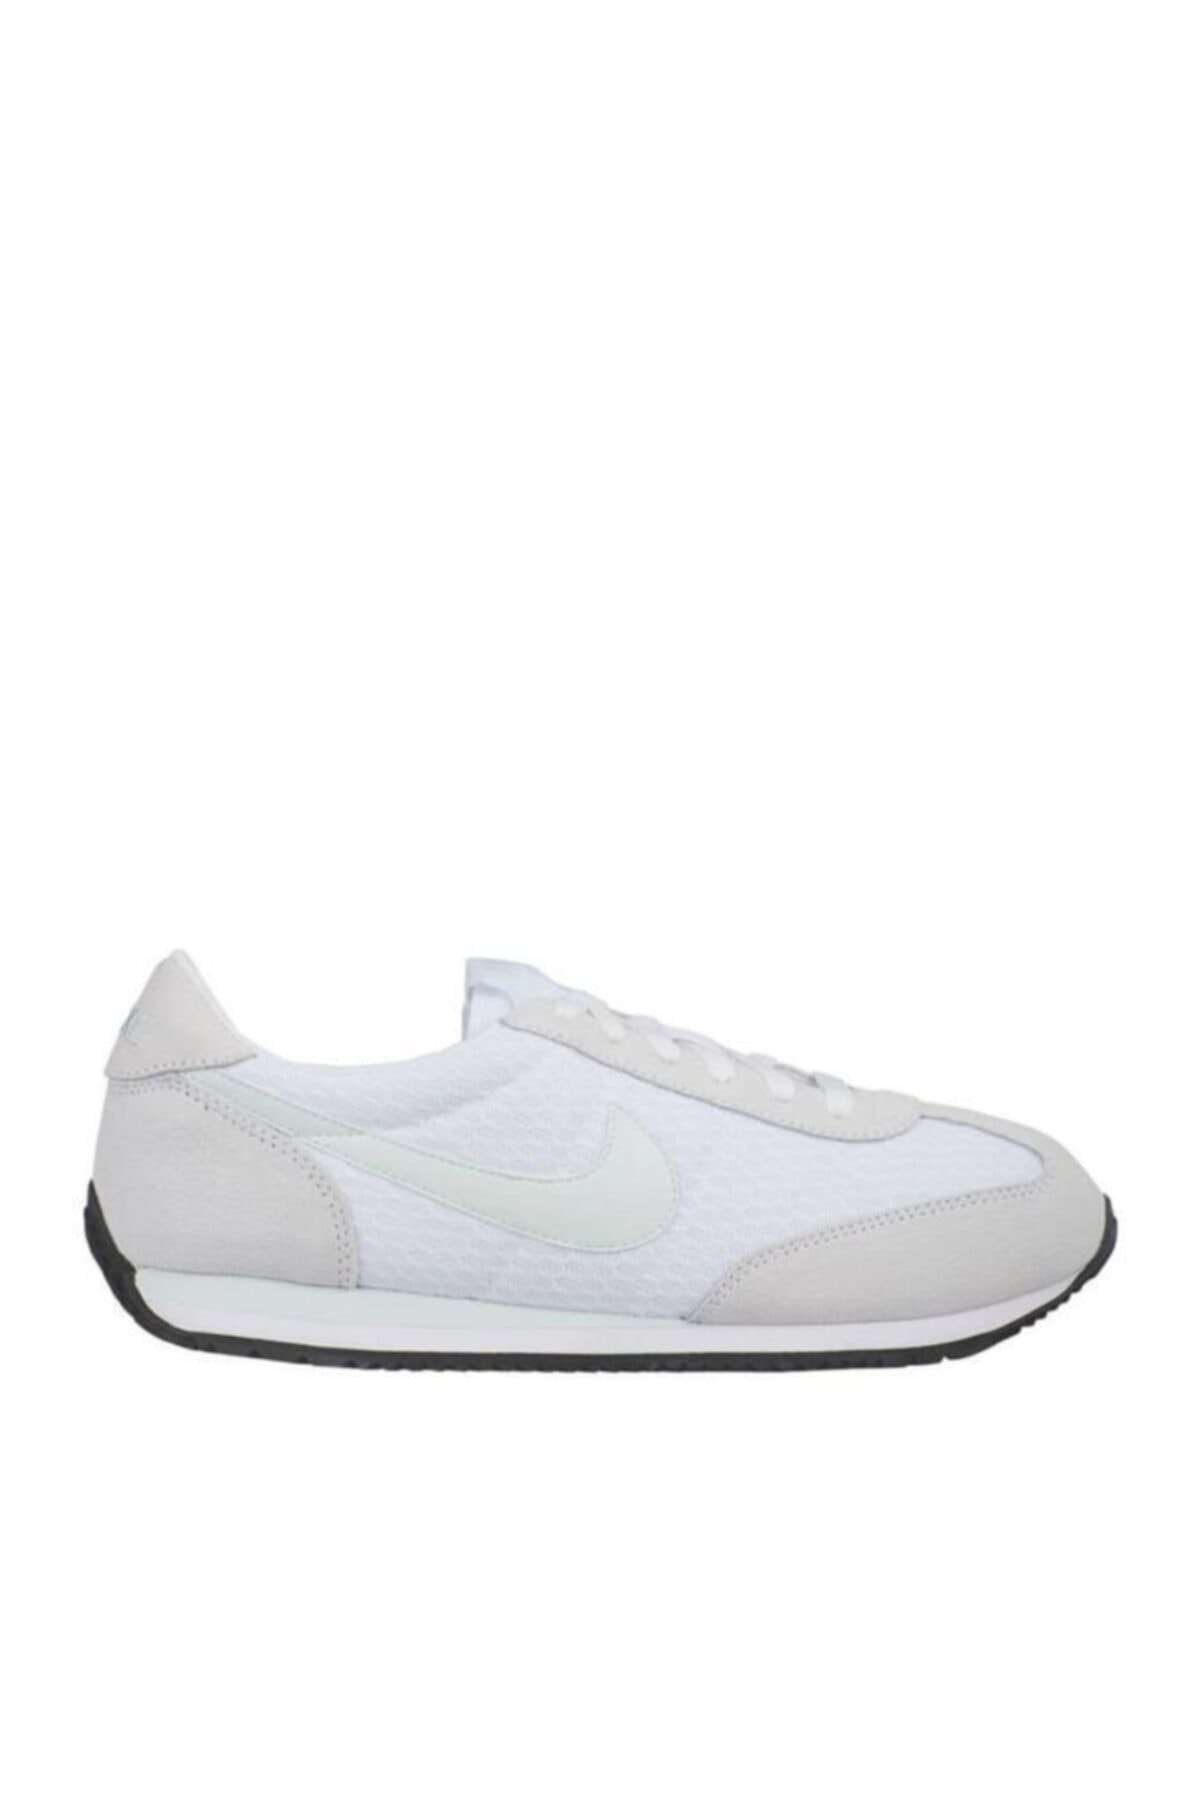 Nike Oceania Textile 511880-103 Bayan Spor Ayakkabısı